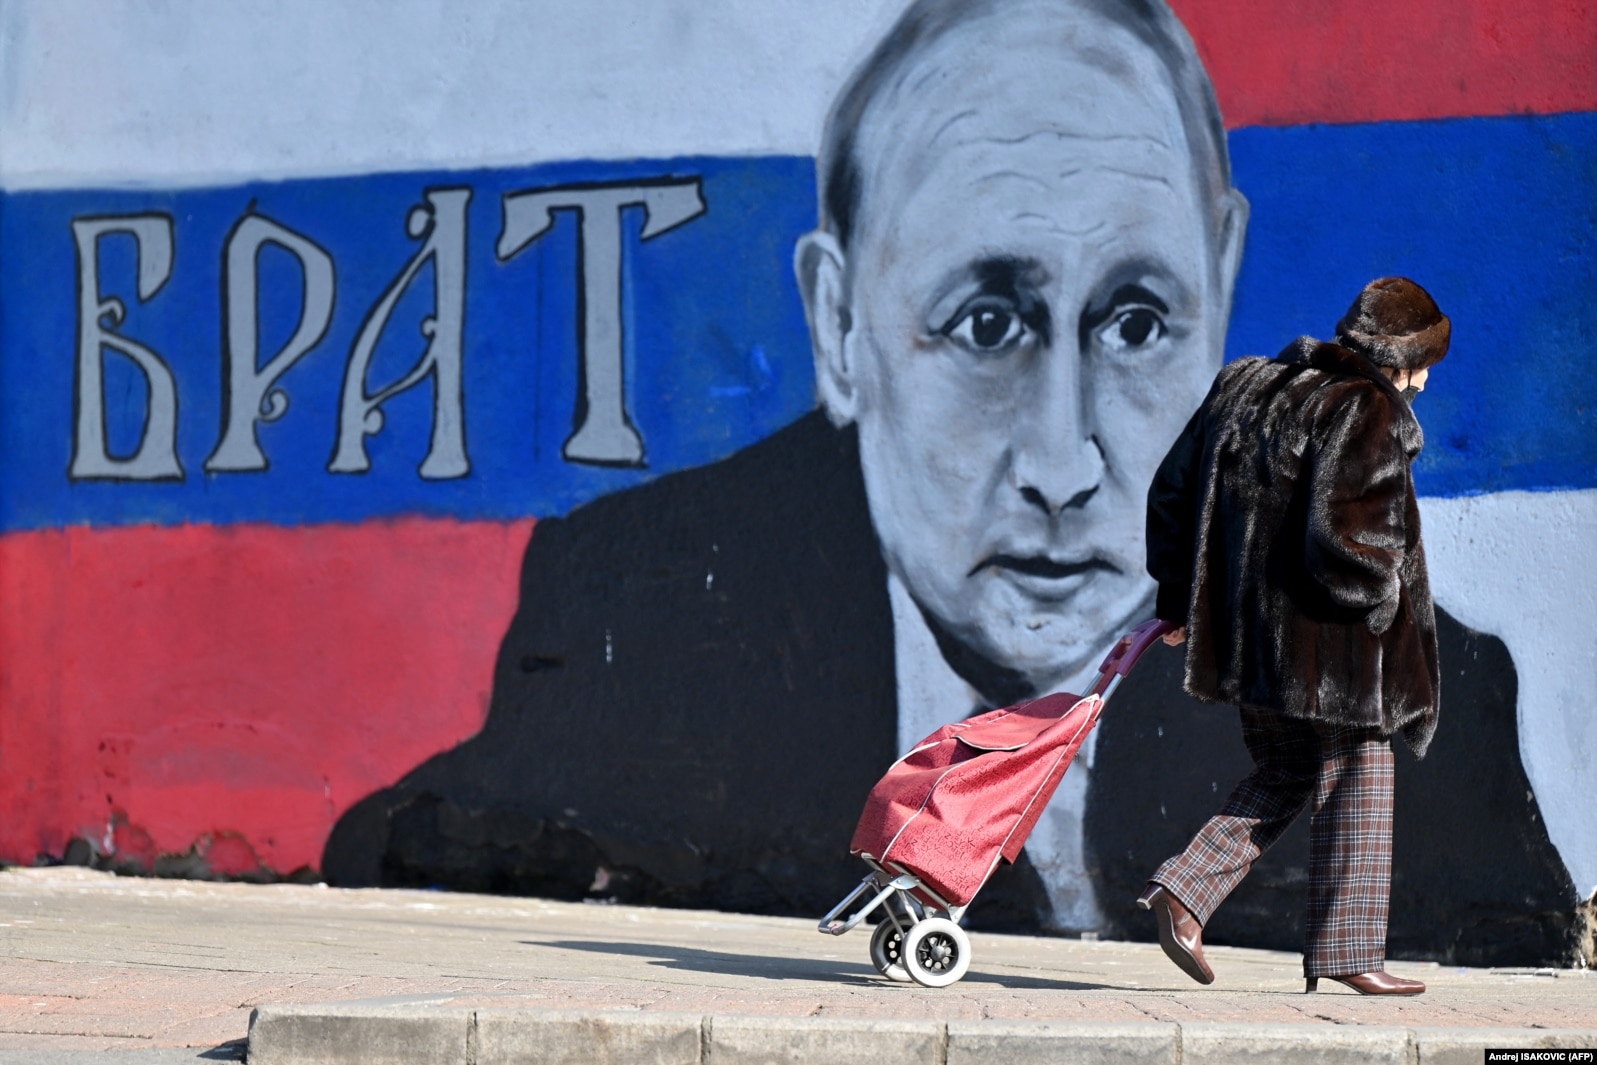 Murali i presidentit të Rusisë, Vladimir Putin, në ditën kur është pikturuar - 5 mars 2022.